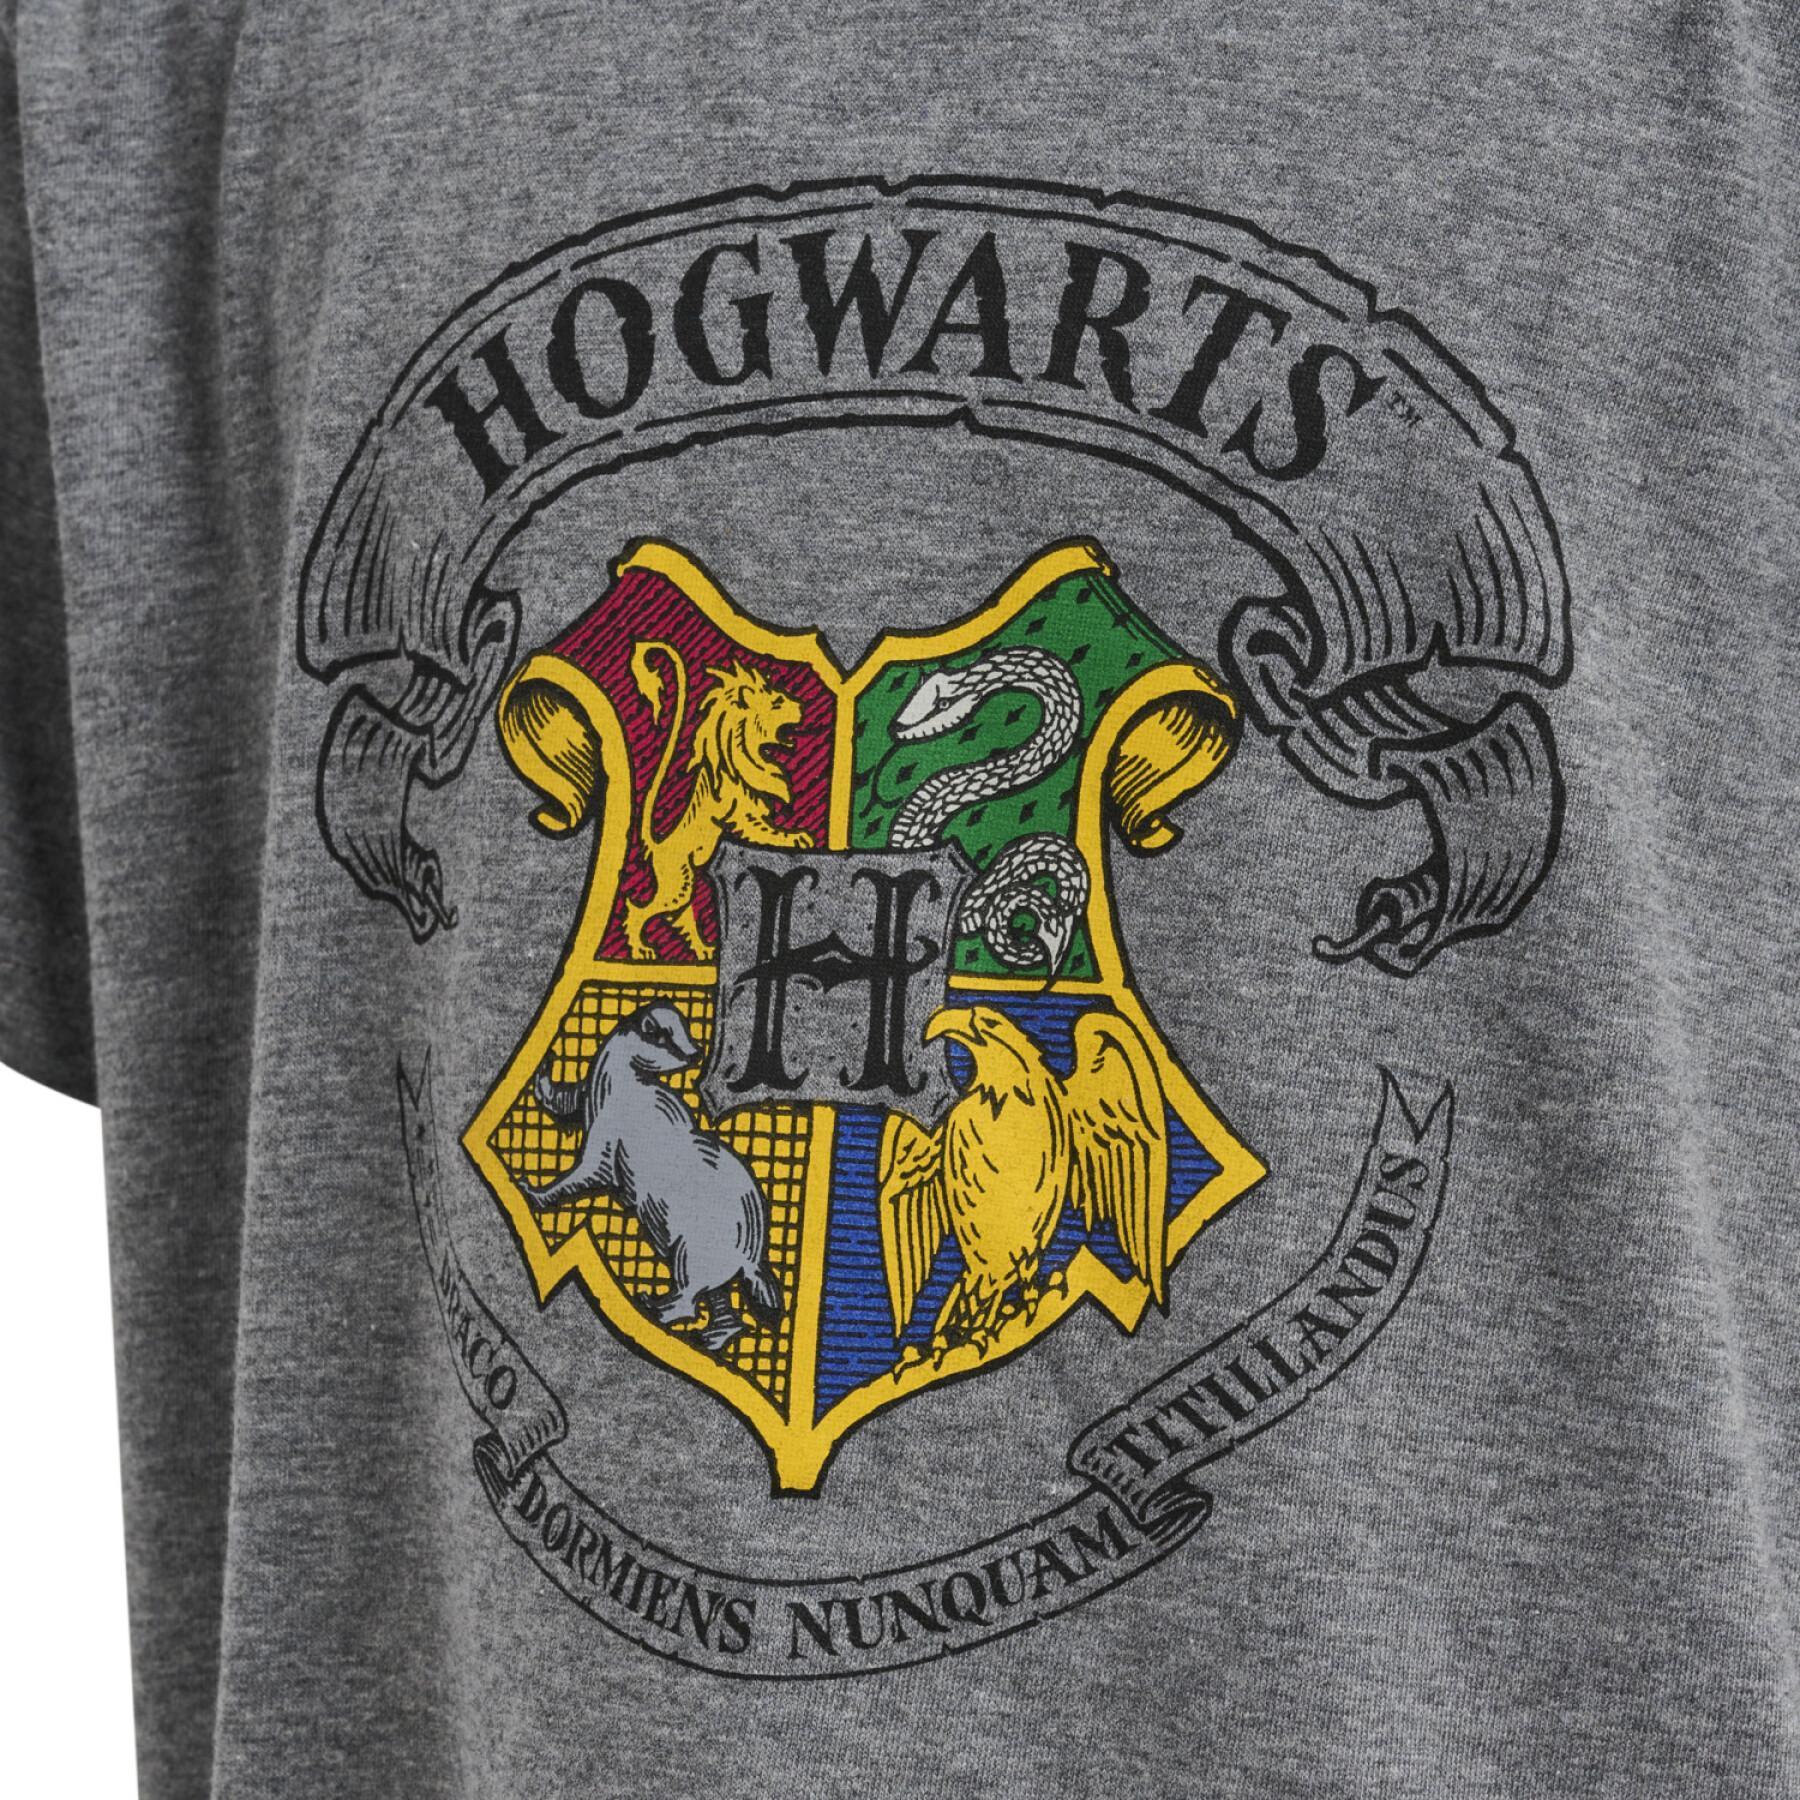 Kinder-T-shirt Hummel Harry Potter Tres